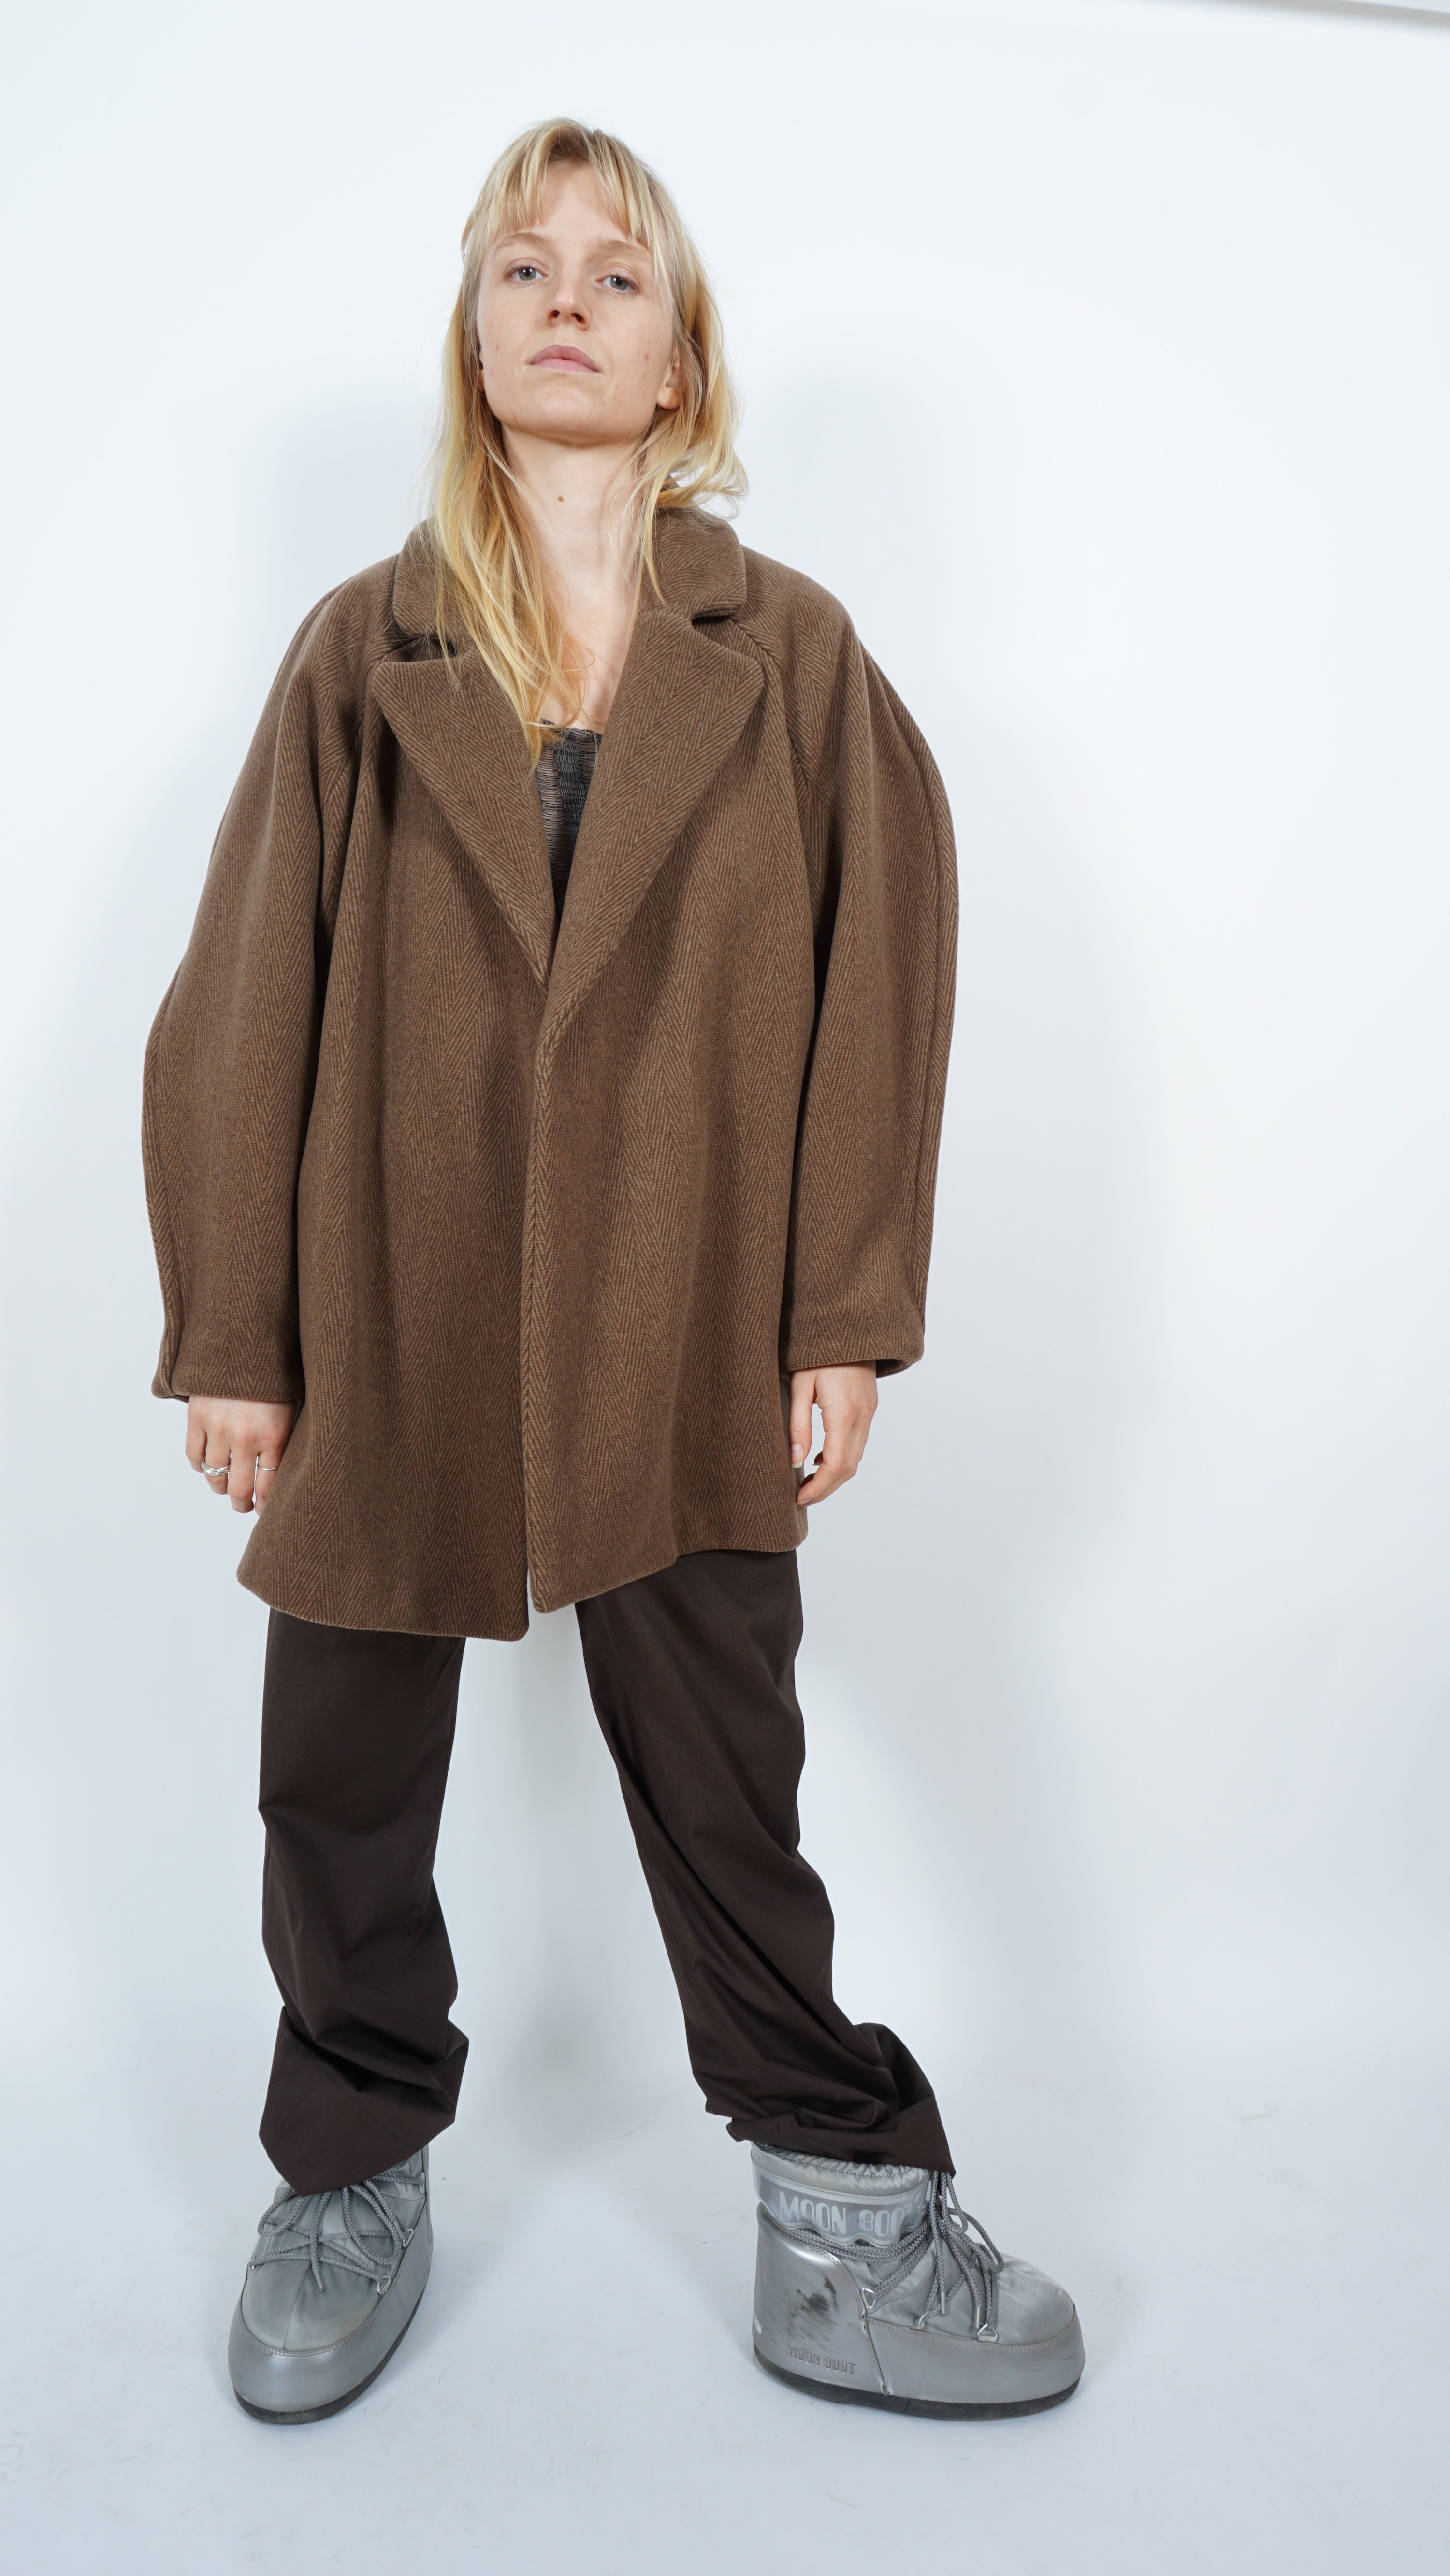 Circle wool jacket by Bettina Bakdal